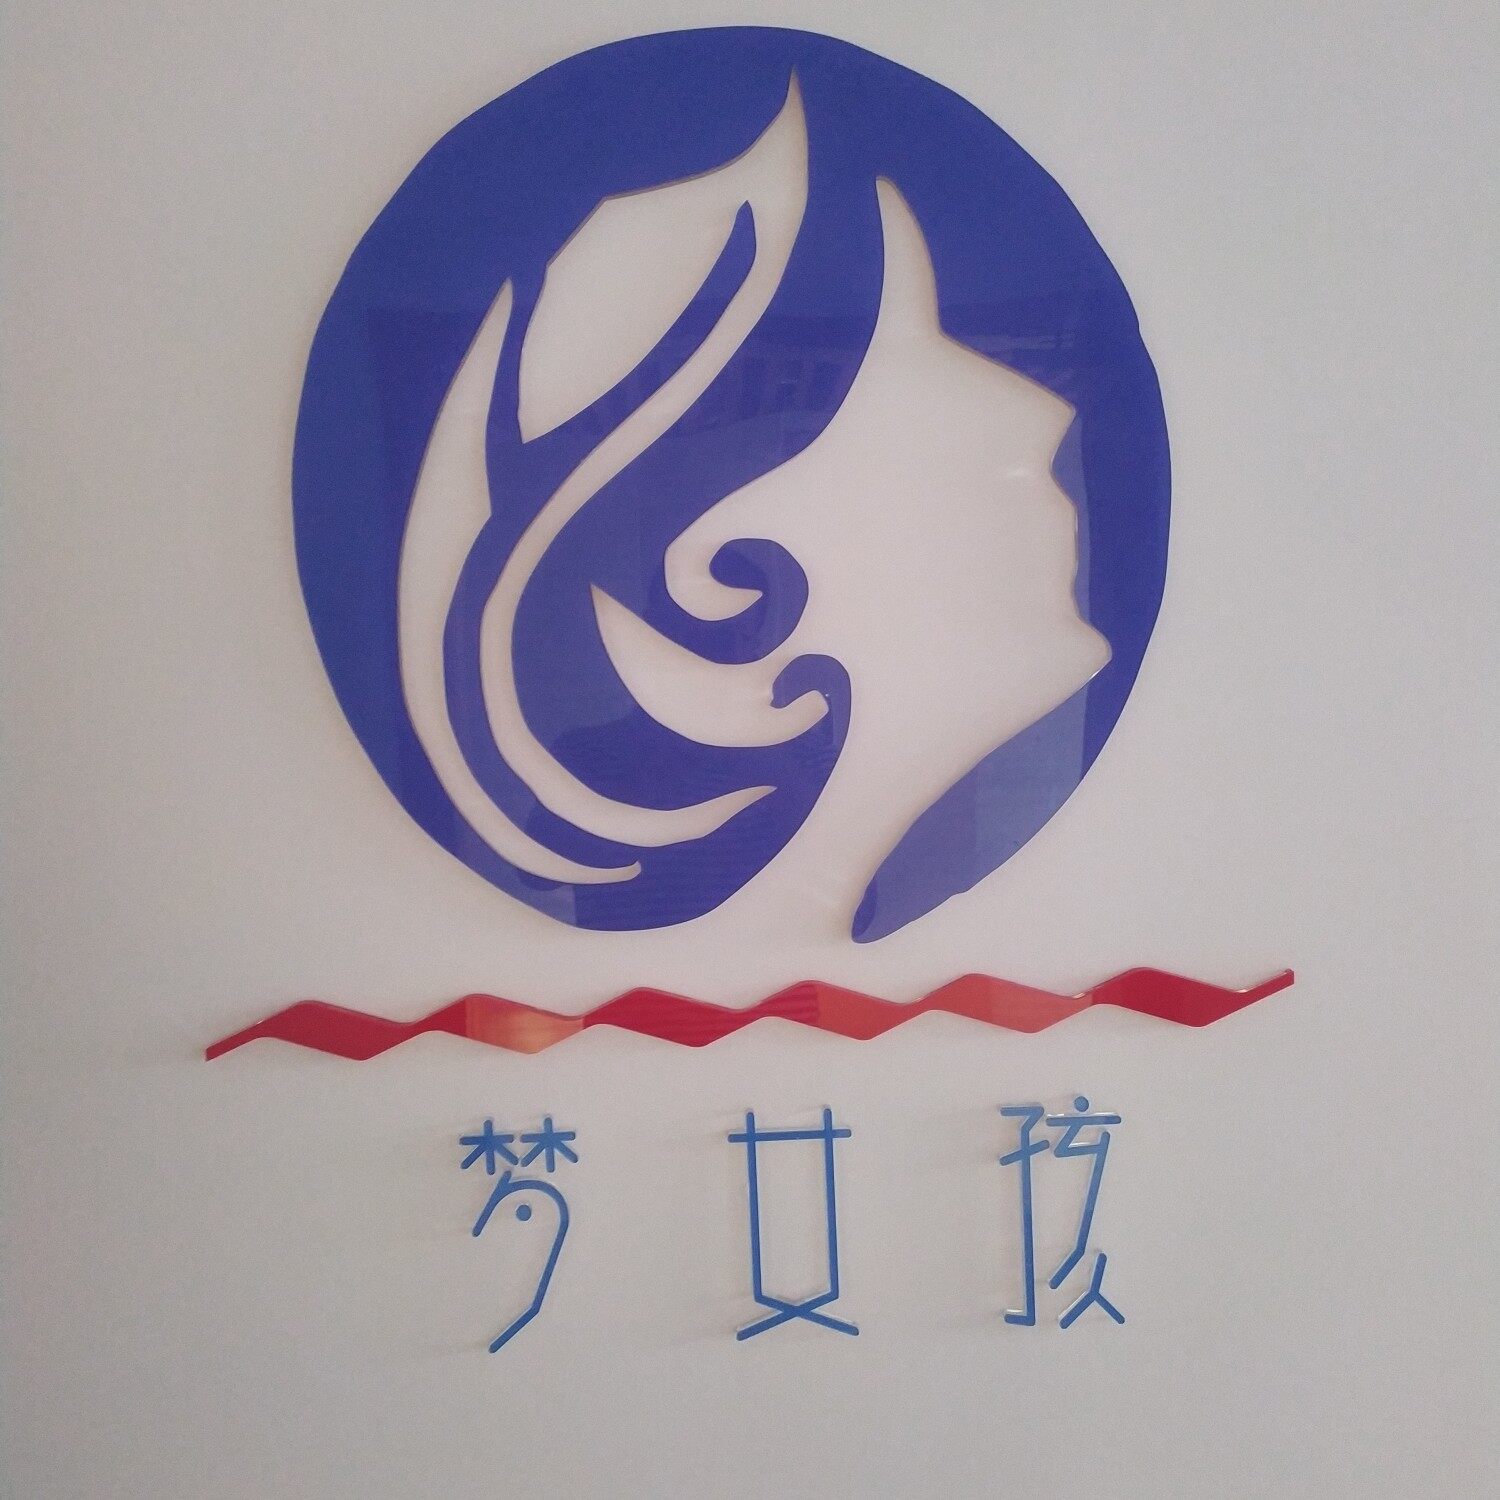 广东省梦女孩影视传媒有限公司logo